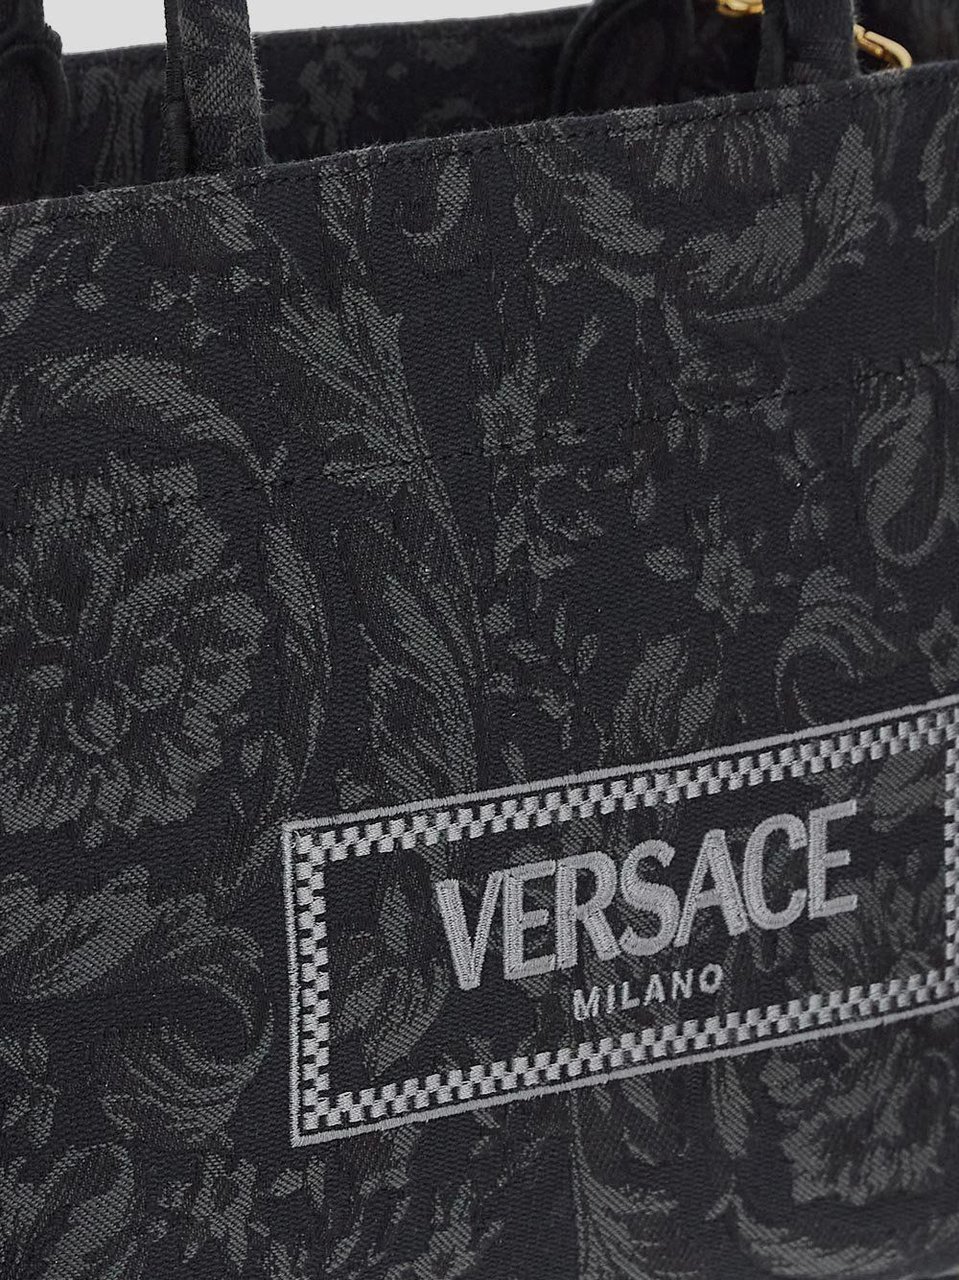 Versace Baroque Bag Zwart